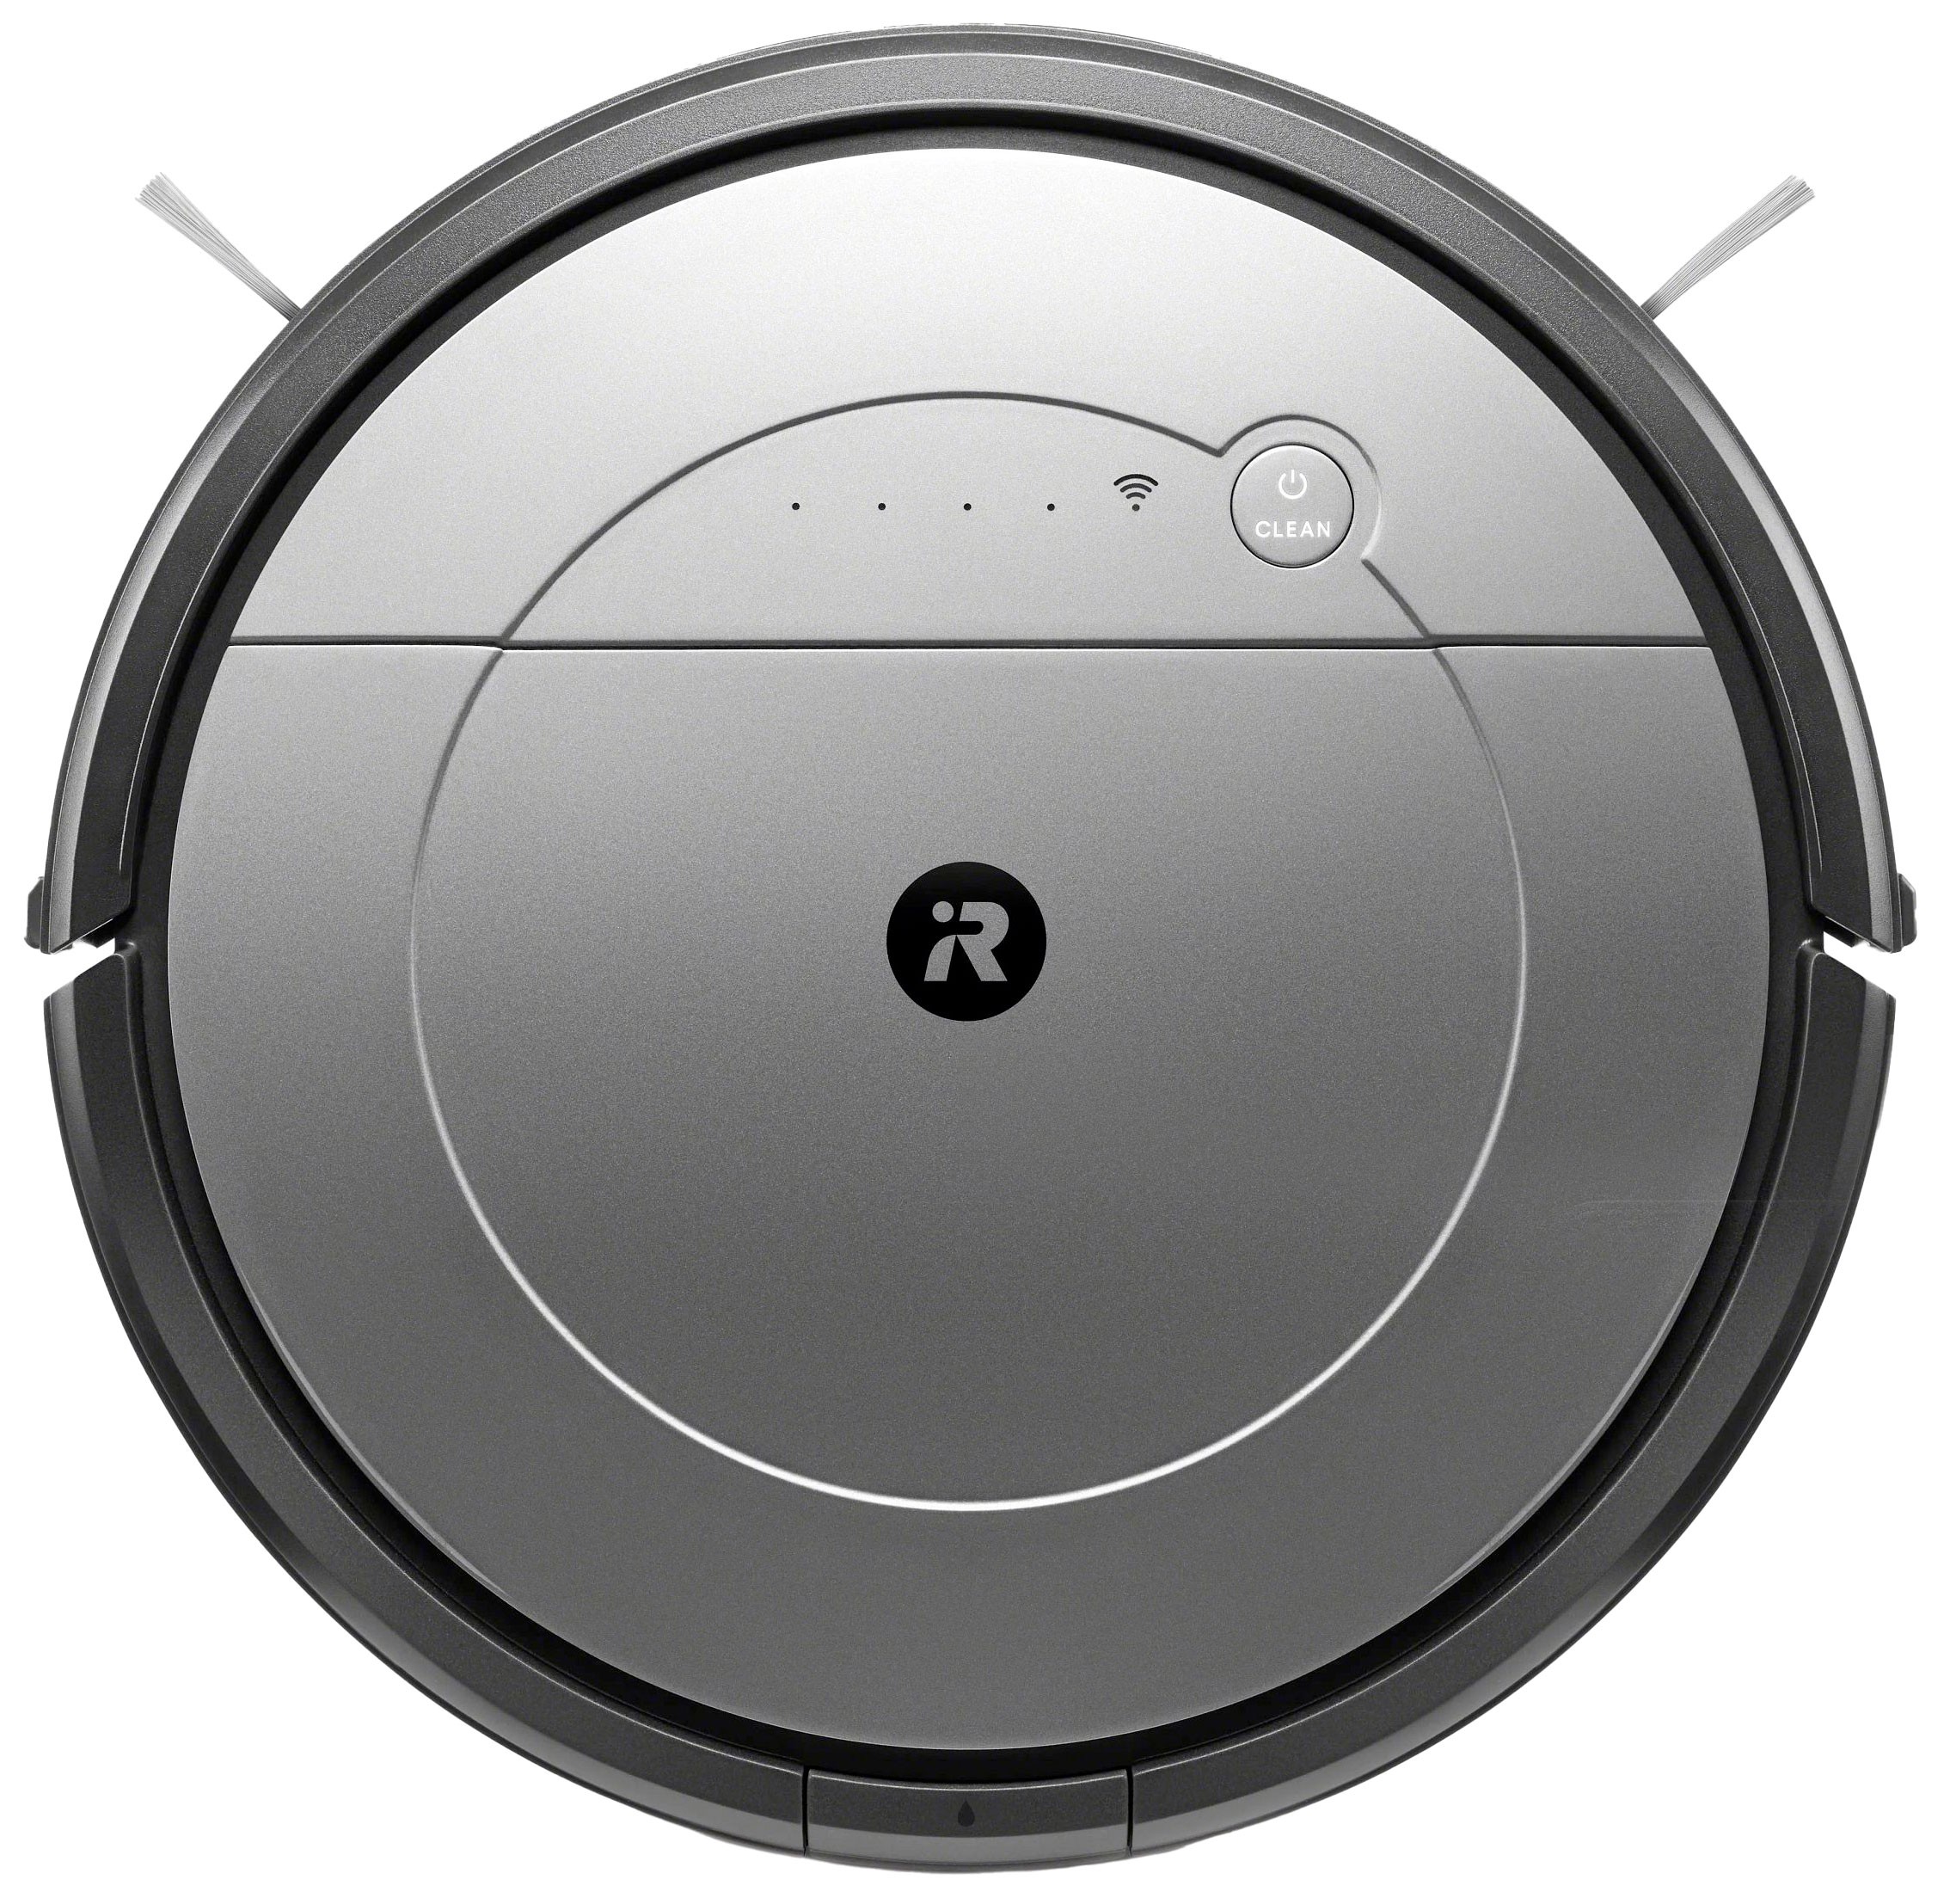 Pièces détachées iRobot Roomba Combo C7 certifiées et officielles